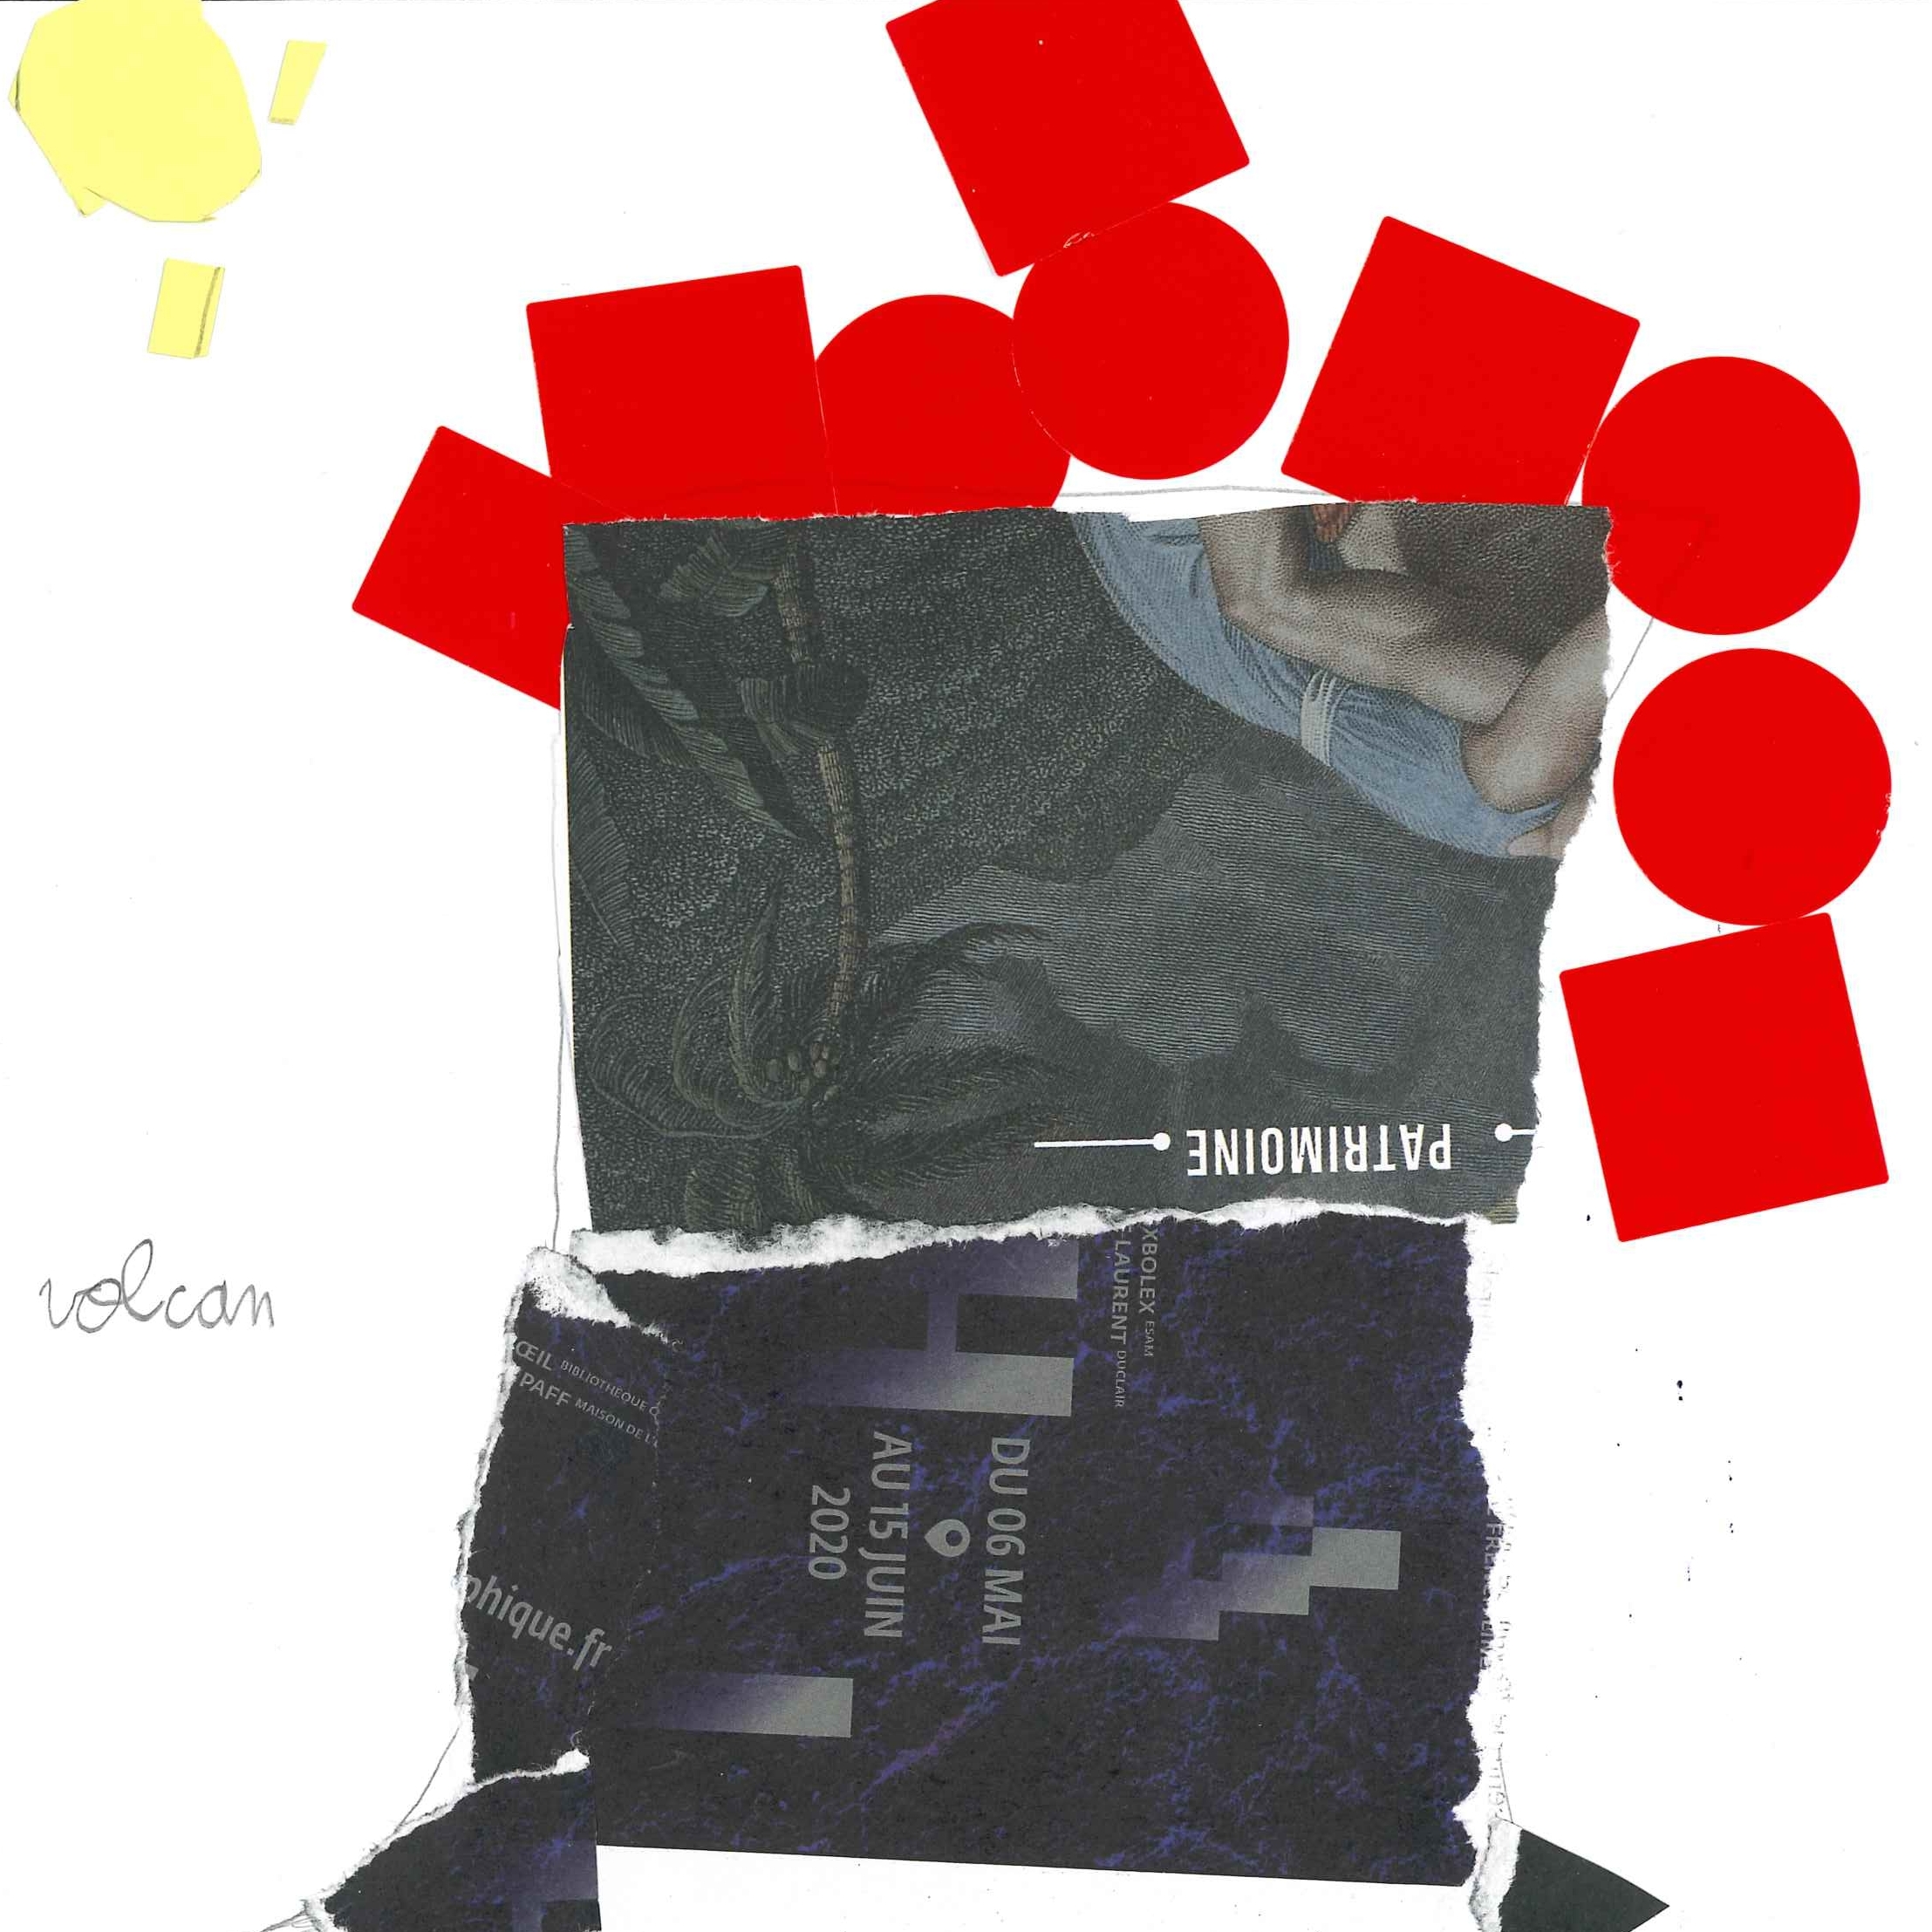 Dessin de Razim (7 ans). Mot: VolcanTechnique: Découpage / Collage.